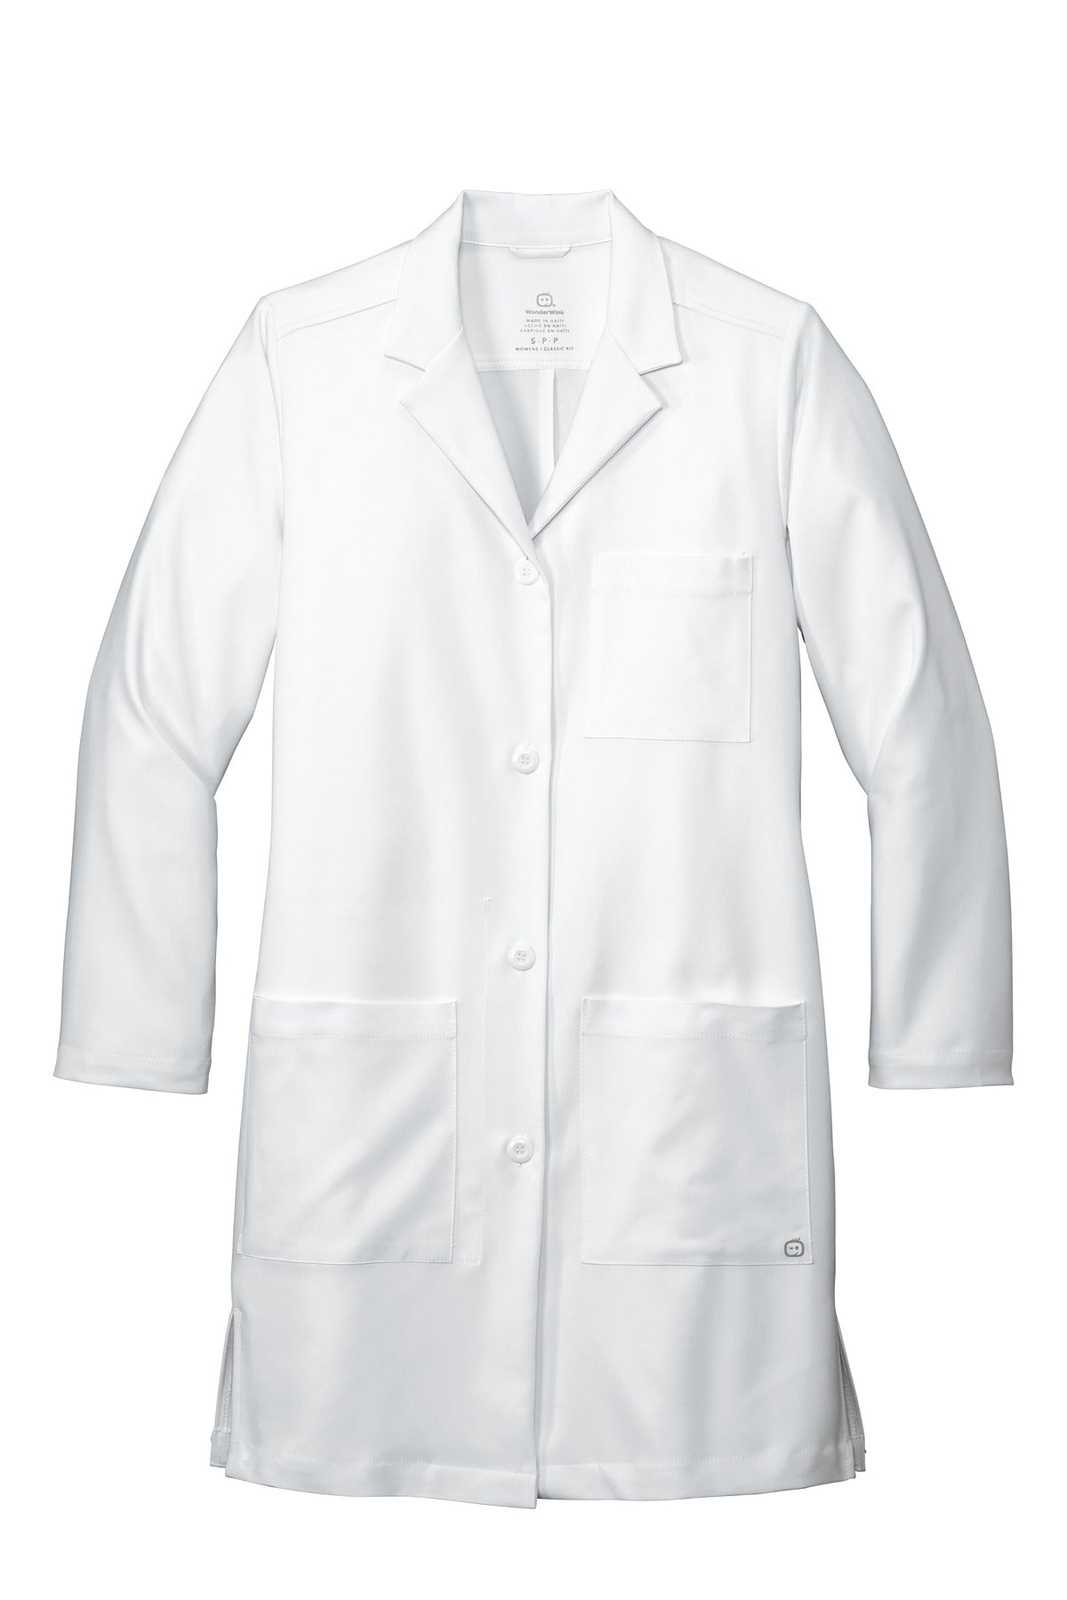 Wonderwink WW4172 Women's Long Lab Coat - White - HIT a Double - 1